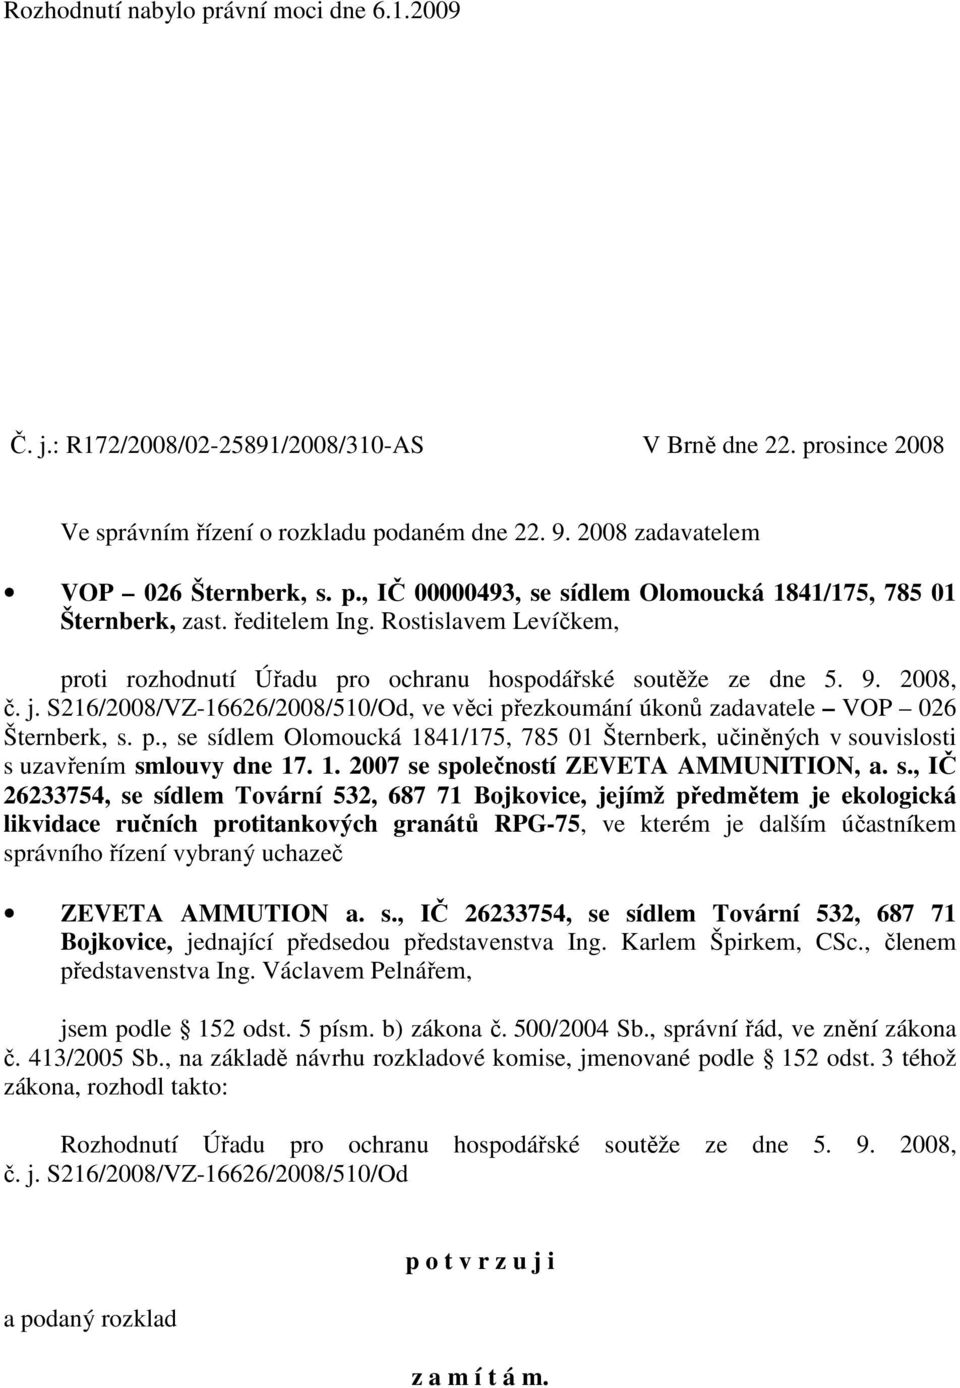 S216/2008/VZ-16626/2008/510/Od, ve věci přezkoumání úkonů zadavatele VOP 026 Šternberk, s. p., se sídlem Olomoucká 1841/175, 785 01 Šternberk, učiněných v souvislosti s uzavřením smlouvy dne 17. 1. 2007 se společností ZEVETA AMMUNITION, a.